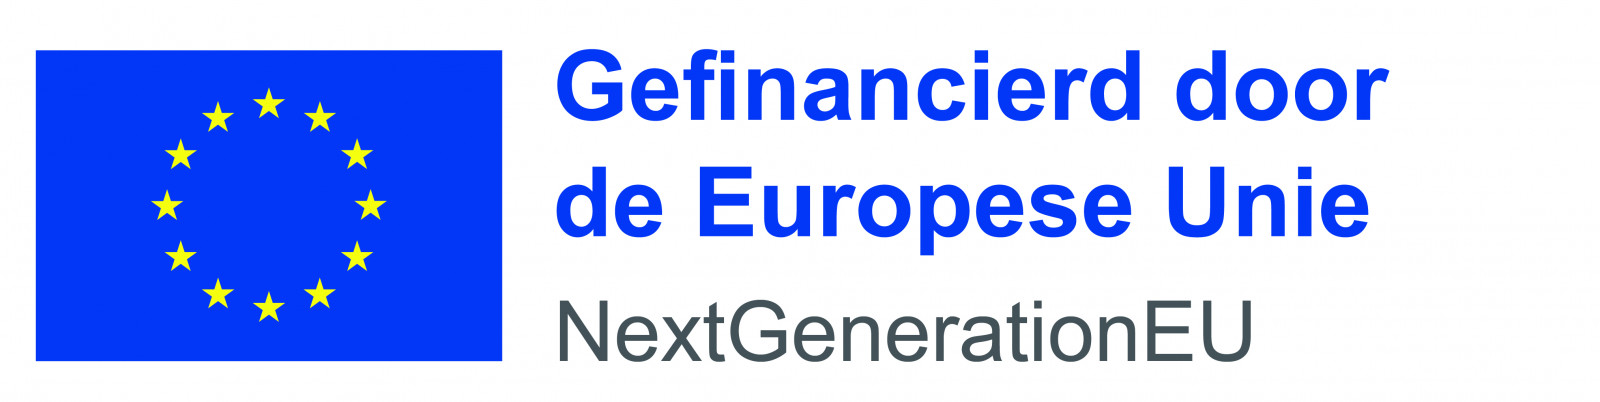 tekst 'Gefinancierd door de Europese Unie - Next generationEU'